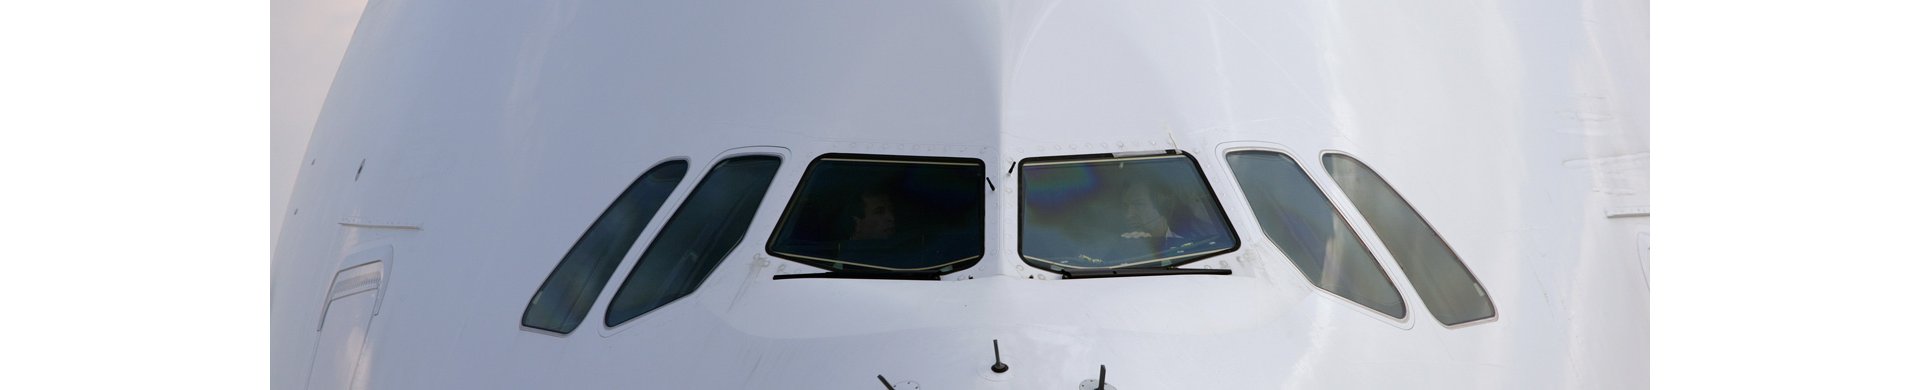 Cockpits Passenger Aircraft Airbus